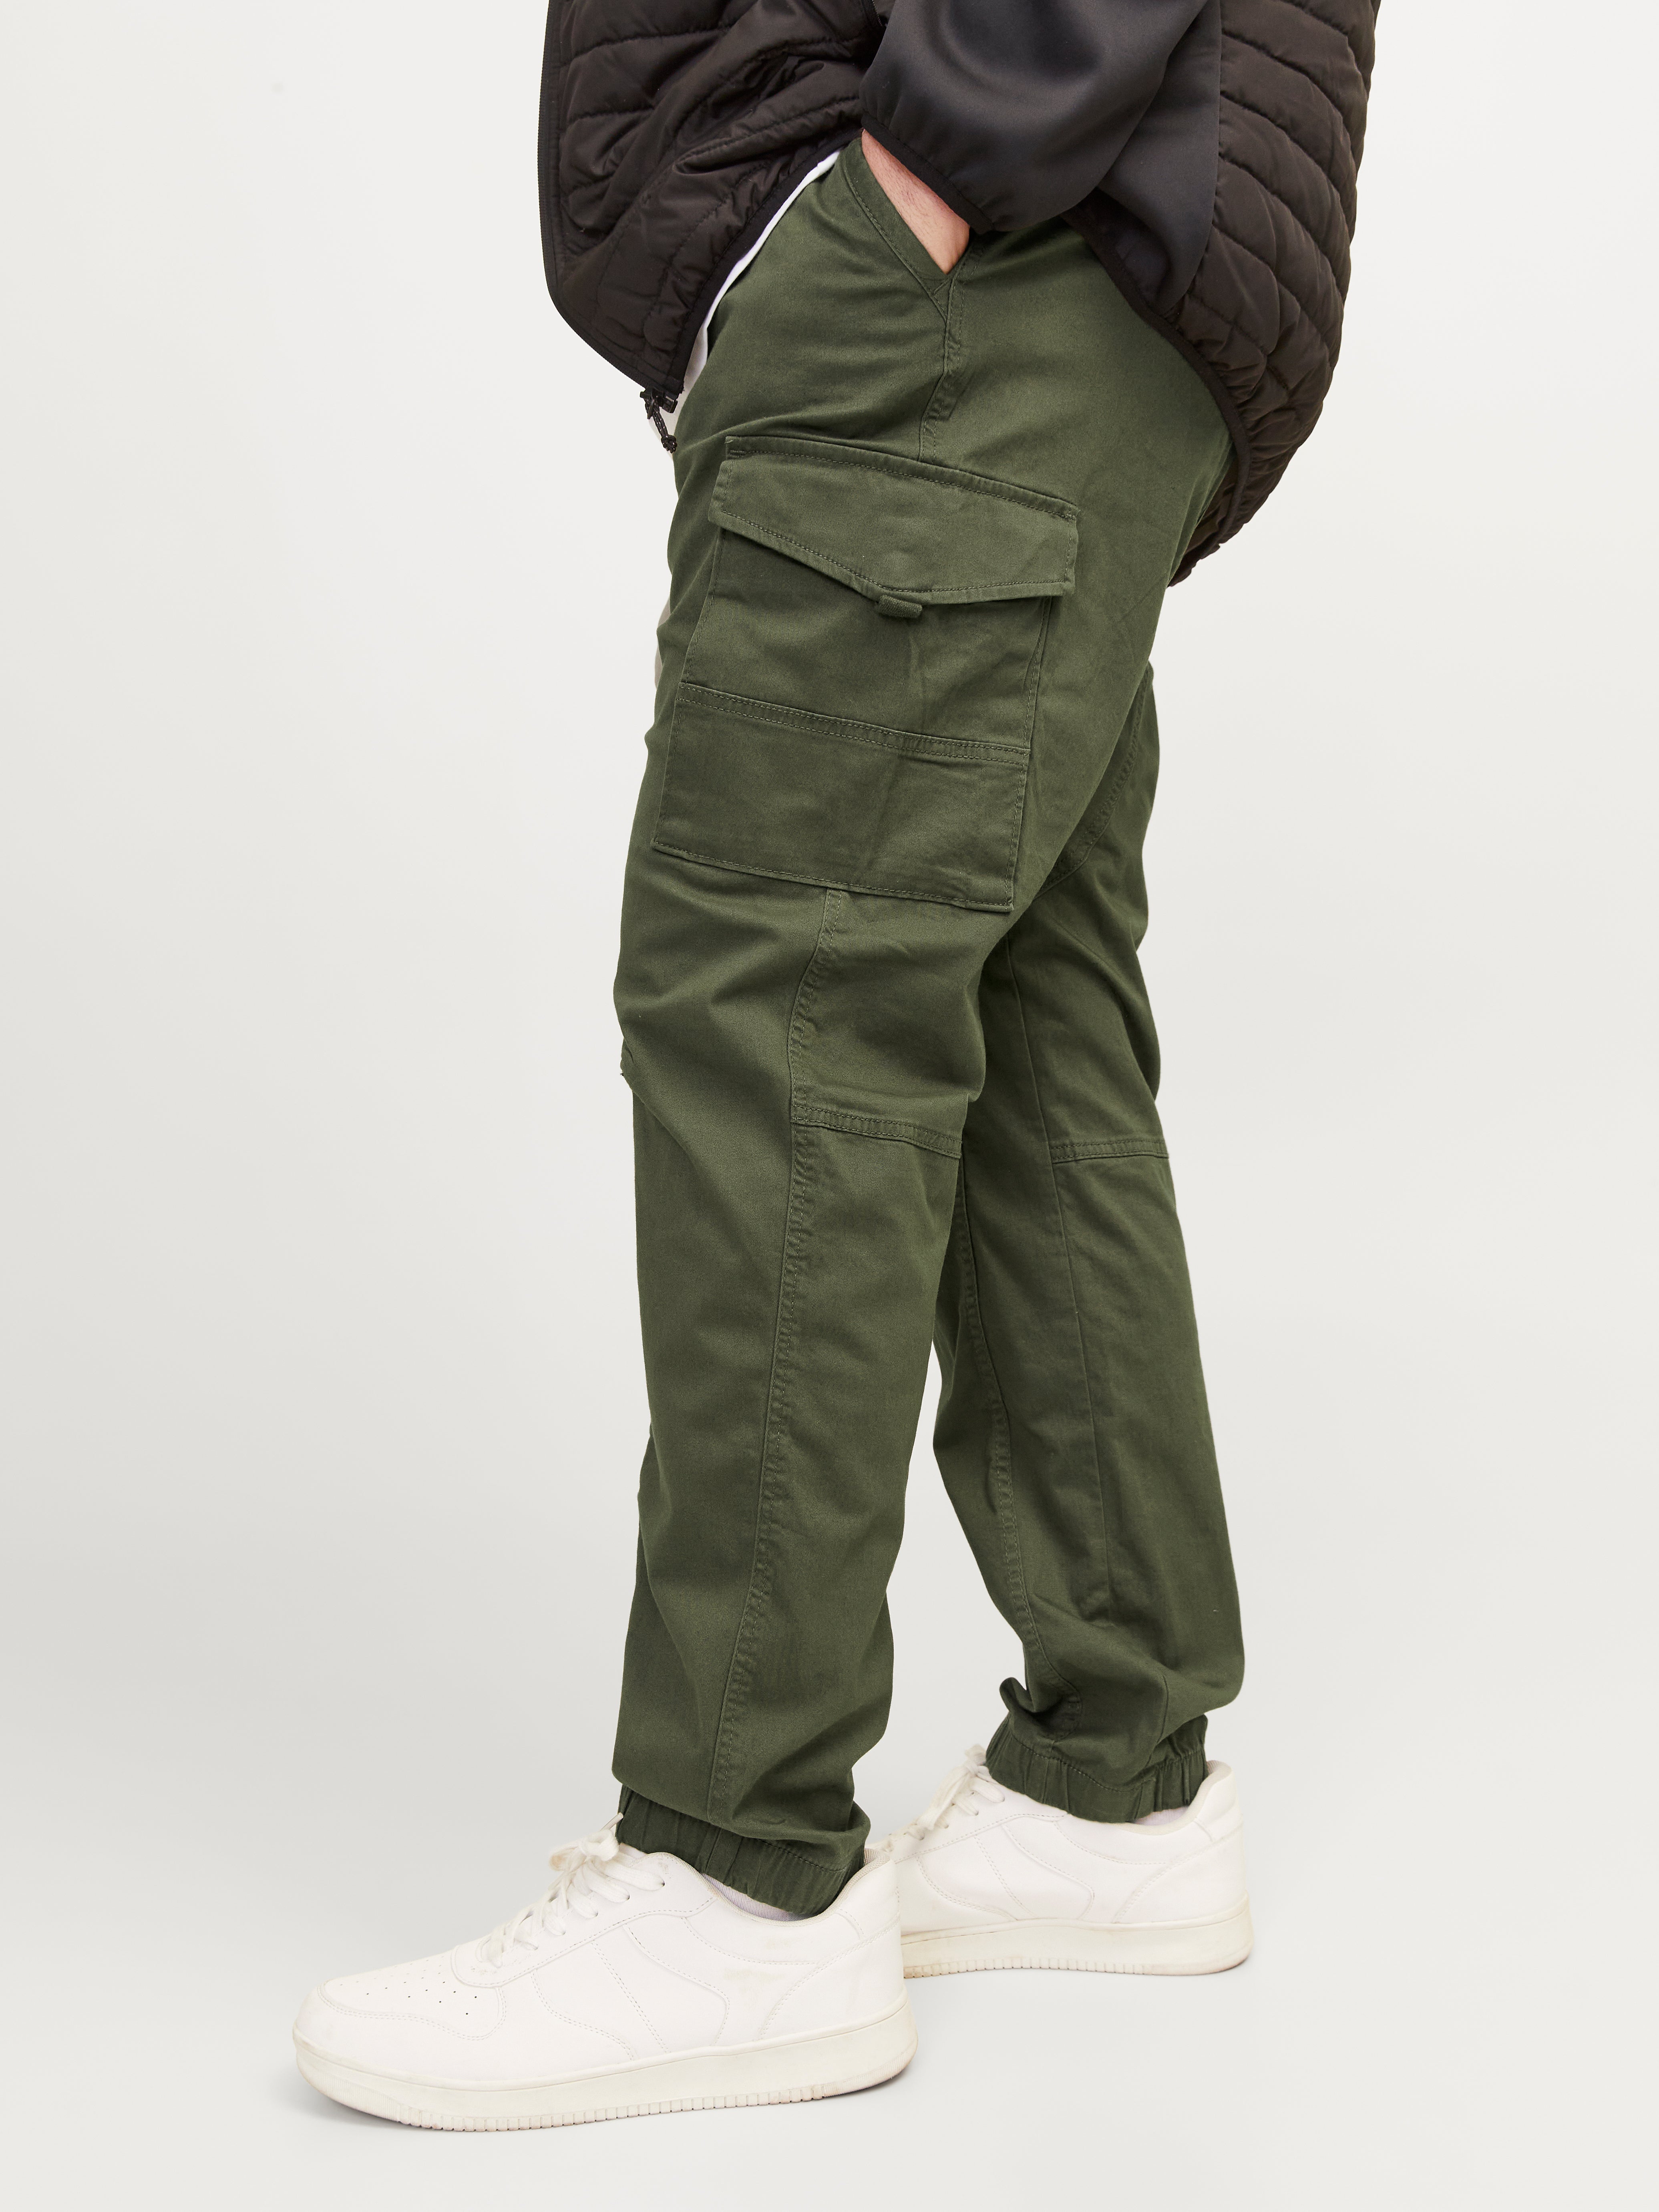 Muxika Cargo Pants For Men Men'S Plus Size Cotton Multi-Pocket  Wear-Resistant Overalls Trousers - Walmart.com